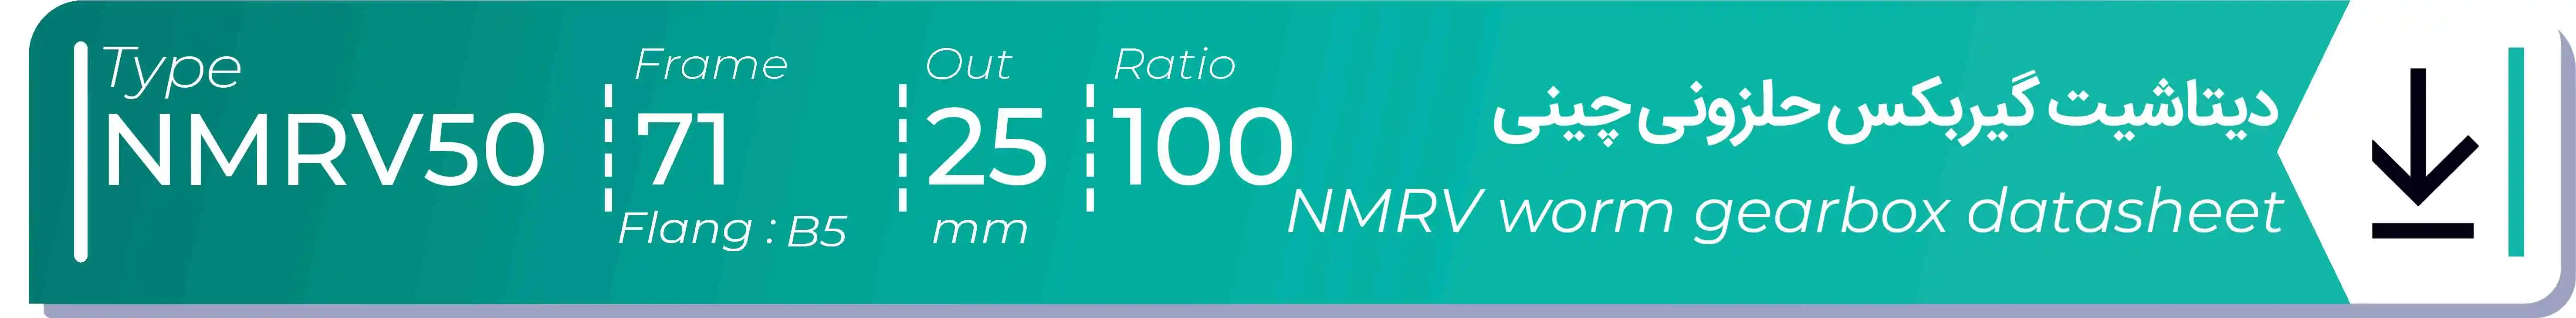  دیتاشیت و مشخصات فنی گیربکس حلزونی چینی   NMRV50  -  با خروجی 25- میلی متر و نسبت100 و فریم 71